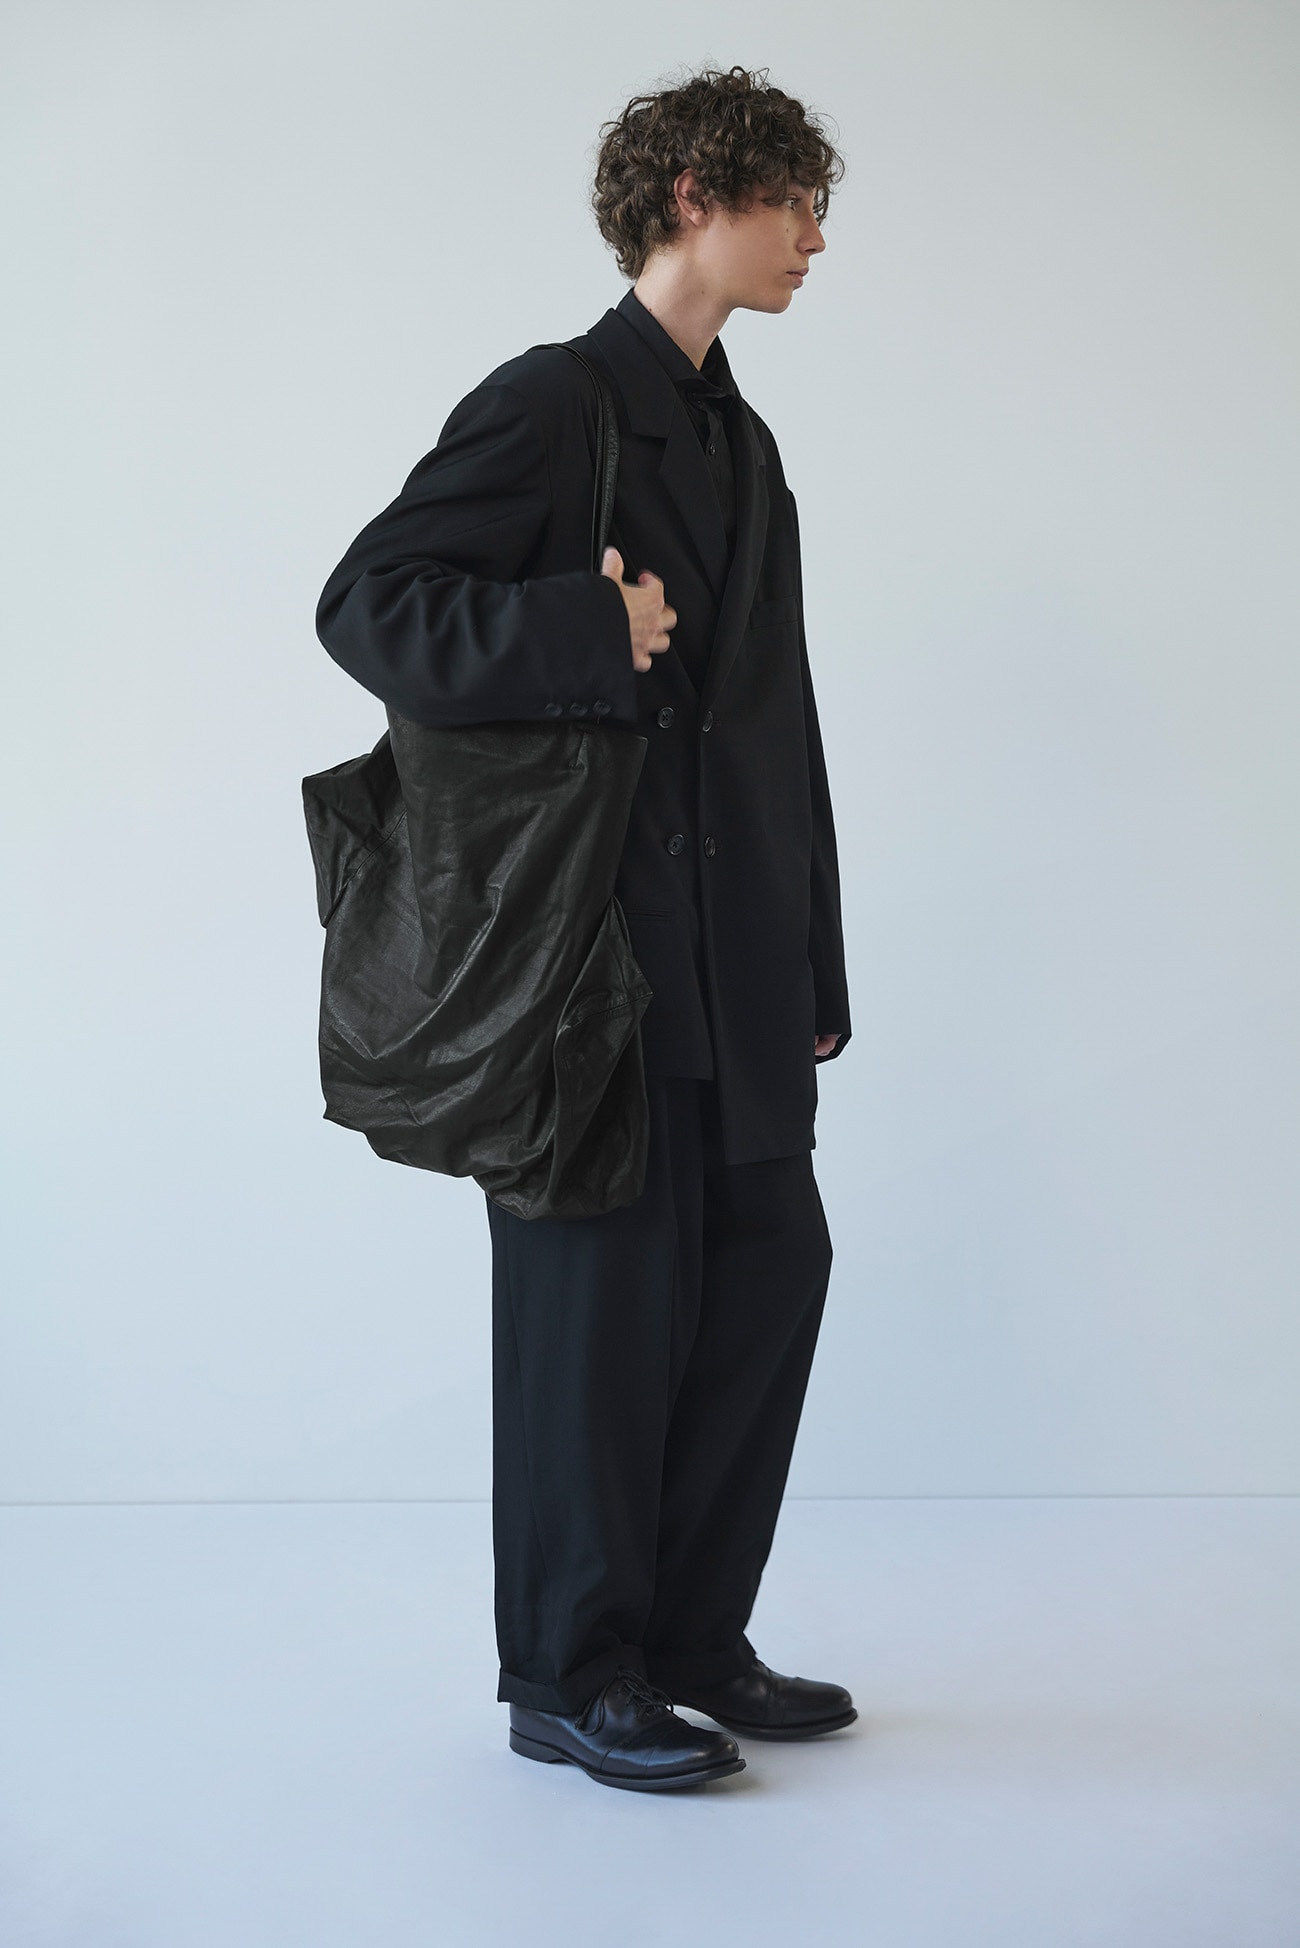 Unevenness tote(Leather)(FREE SIZE Black): discord Yohji Yamamoto 